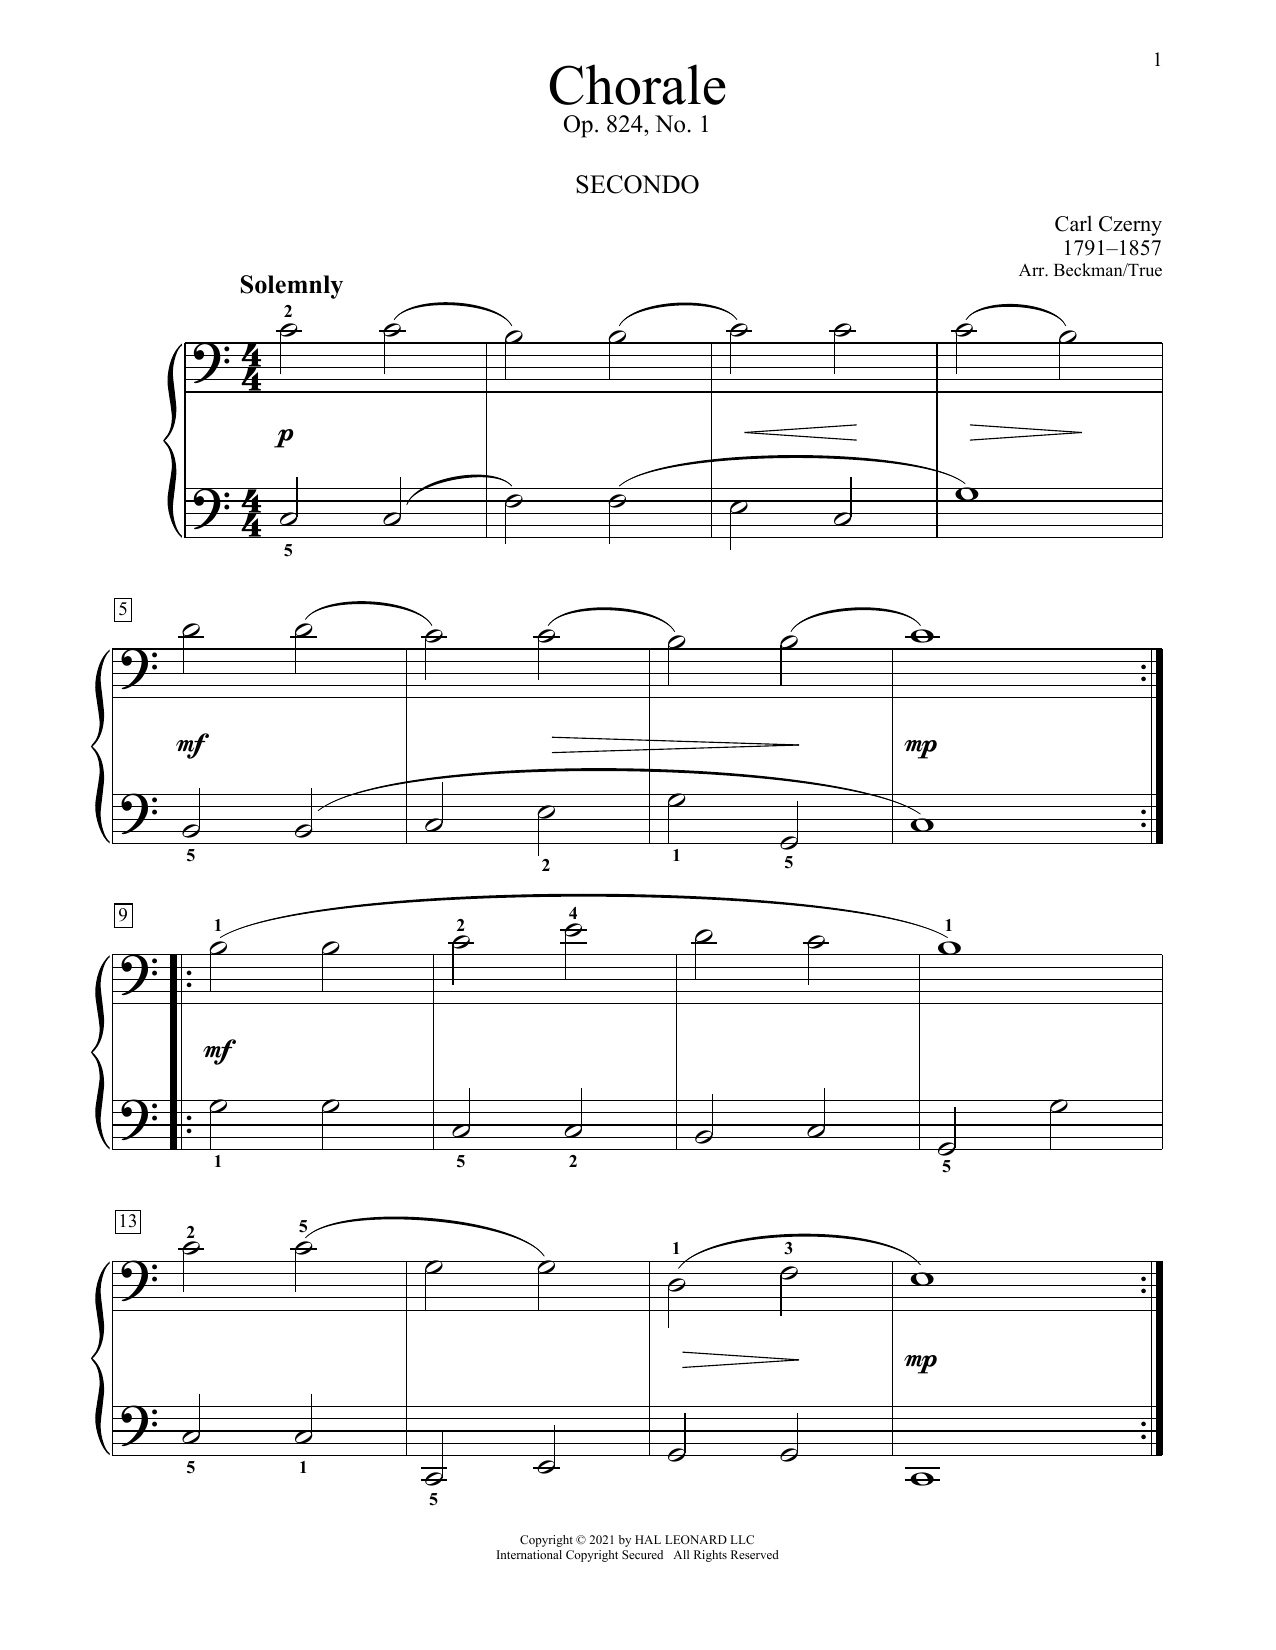 Download Carl Czerny Chorale, Op. 824 No. 1 Sheet Music